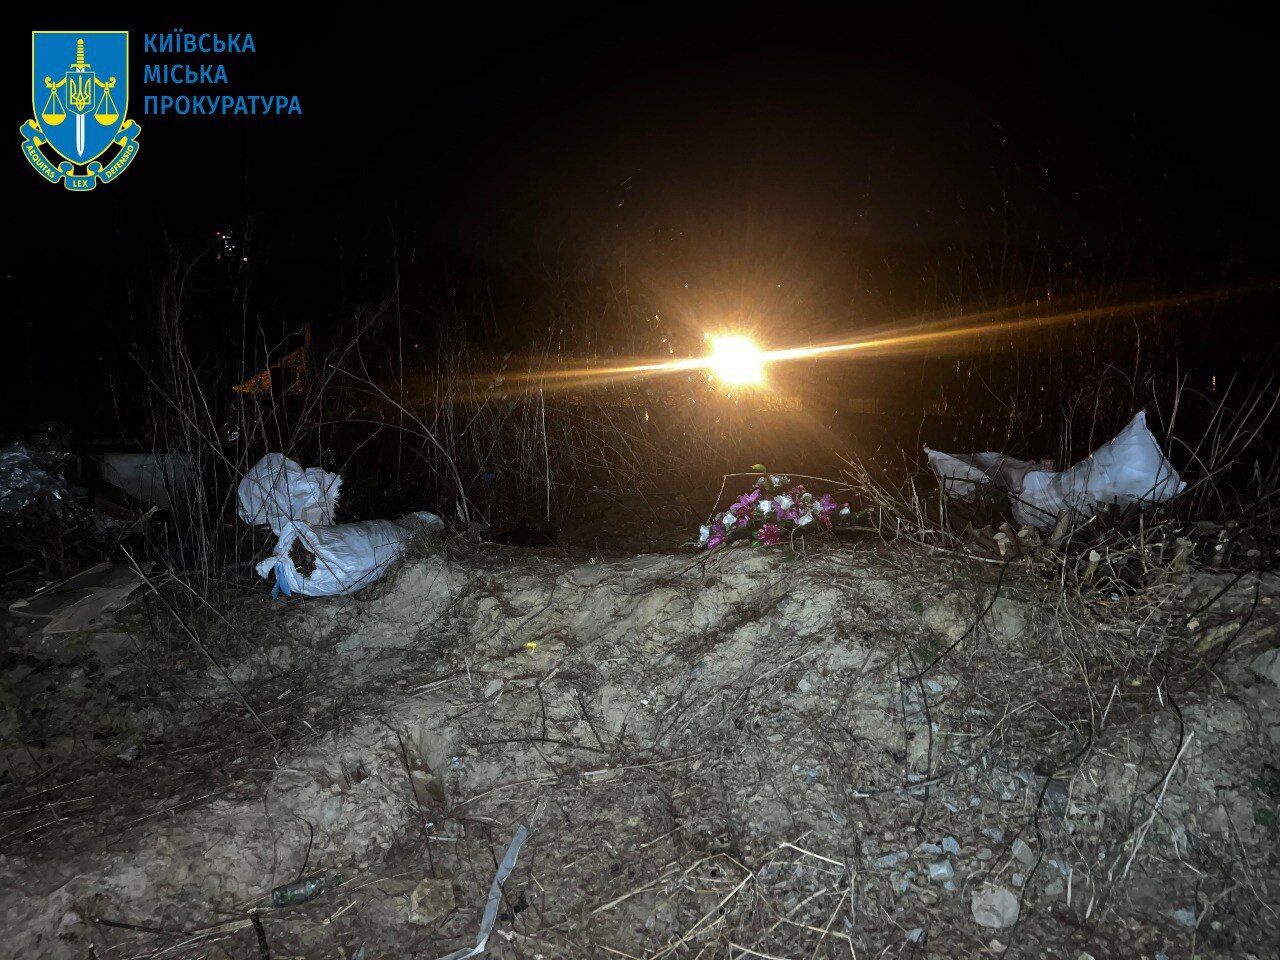 В Киеве работник частной ритуальной службы выбросил на пустырь урны с прахом умерших. Подробности дела